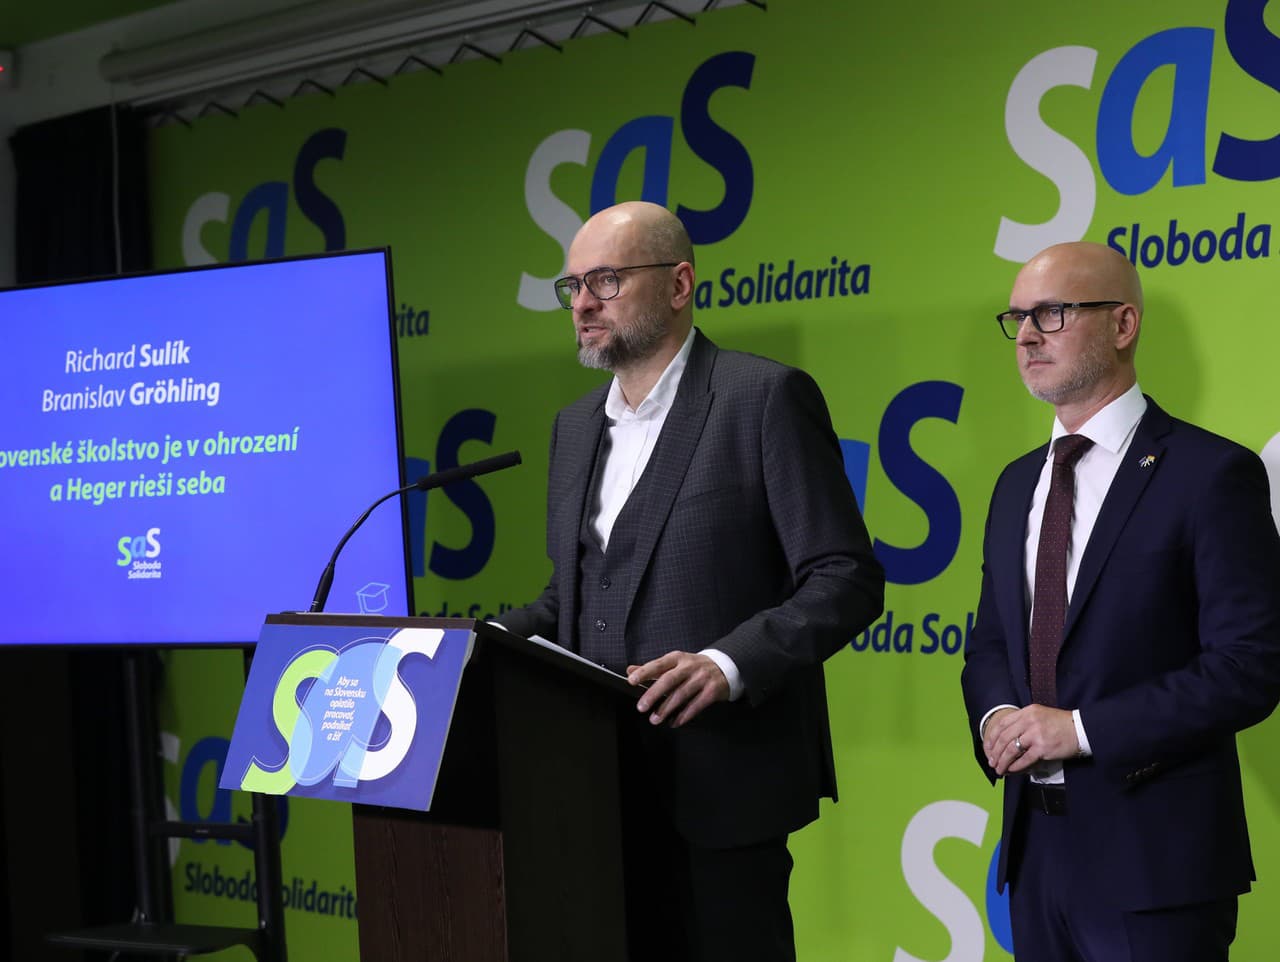 Členovia strany Sas Richard Sulík a Branislav Gröhling 